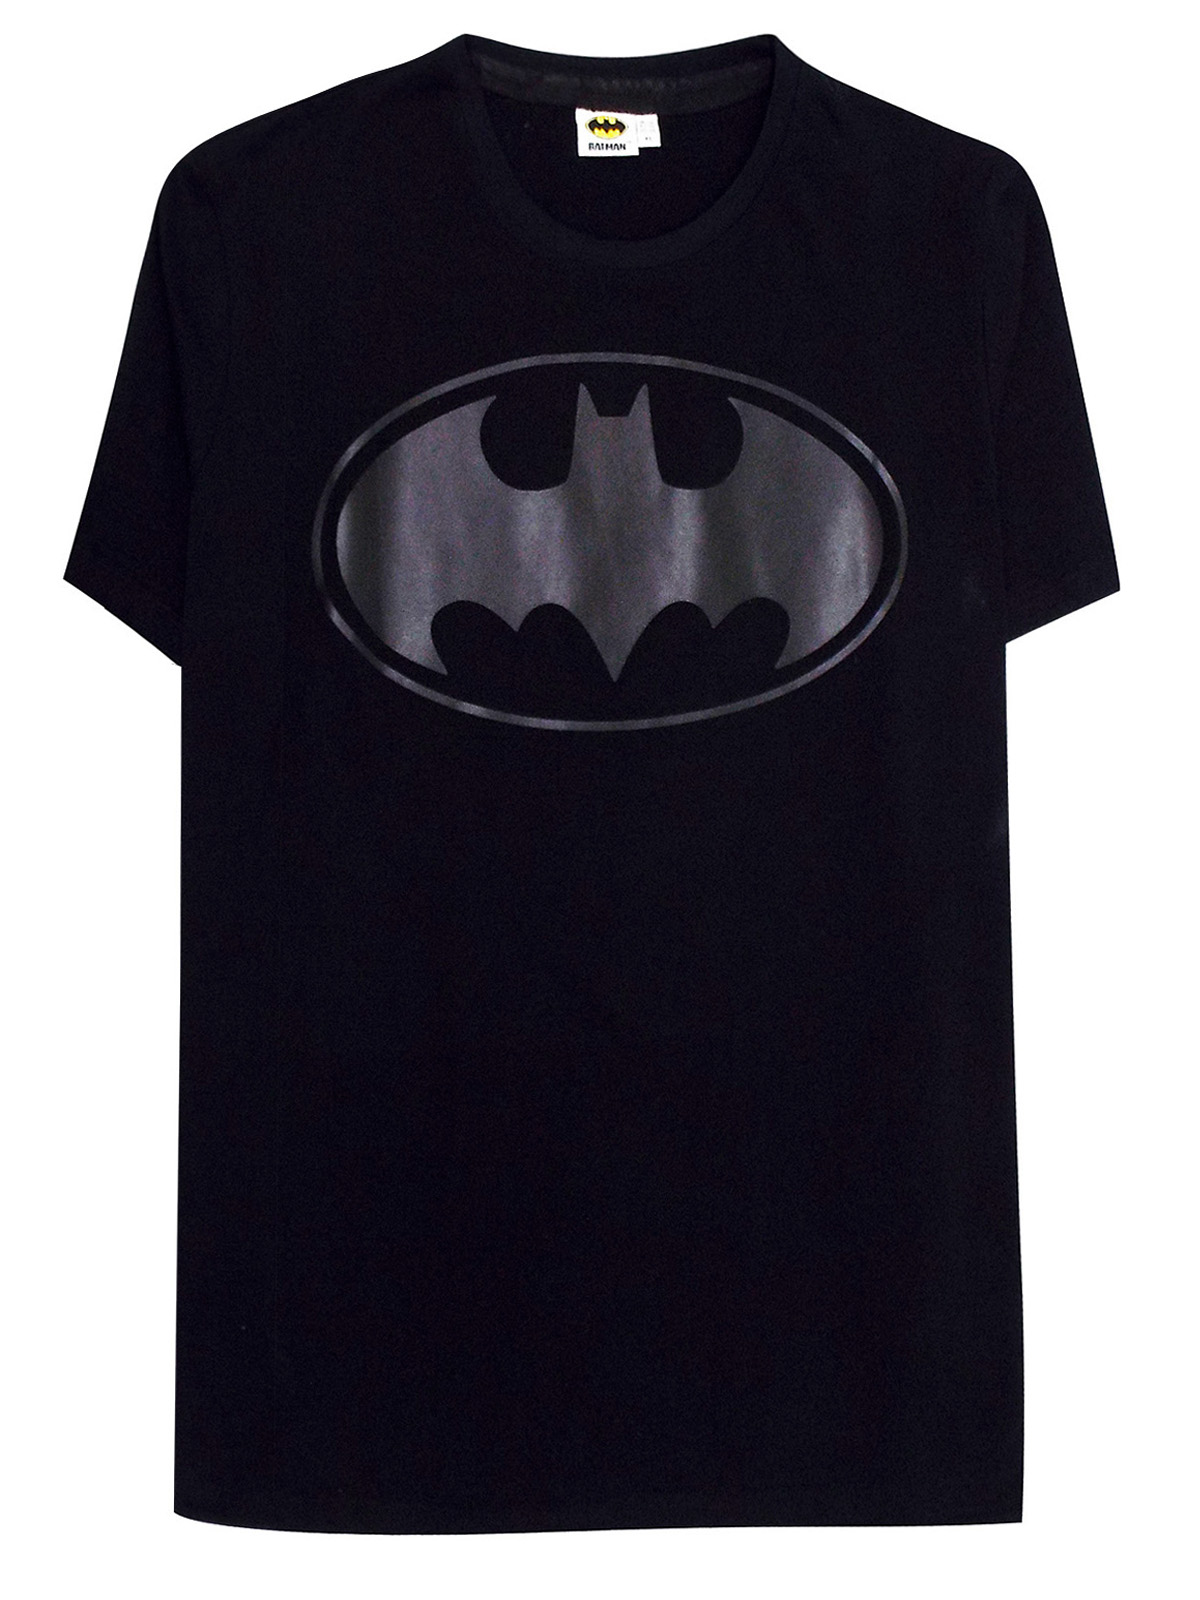 DC Comics - - BLACK Mens Pure Cotton Batman T-Shirt - Plus Size XLarge ...